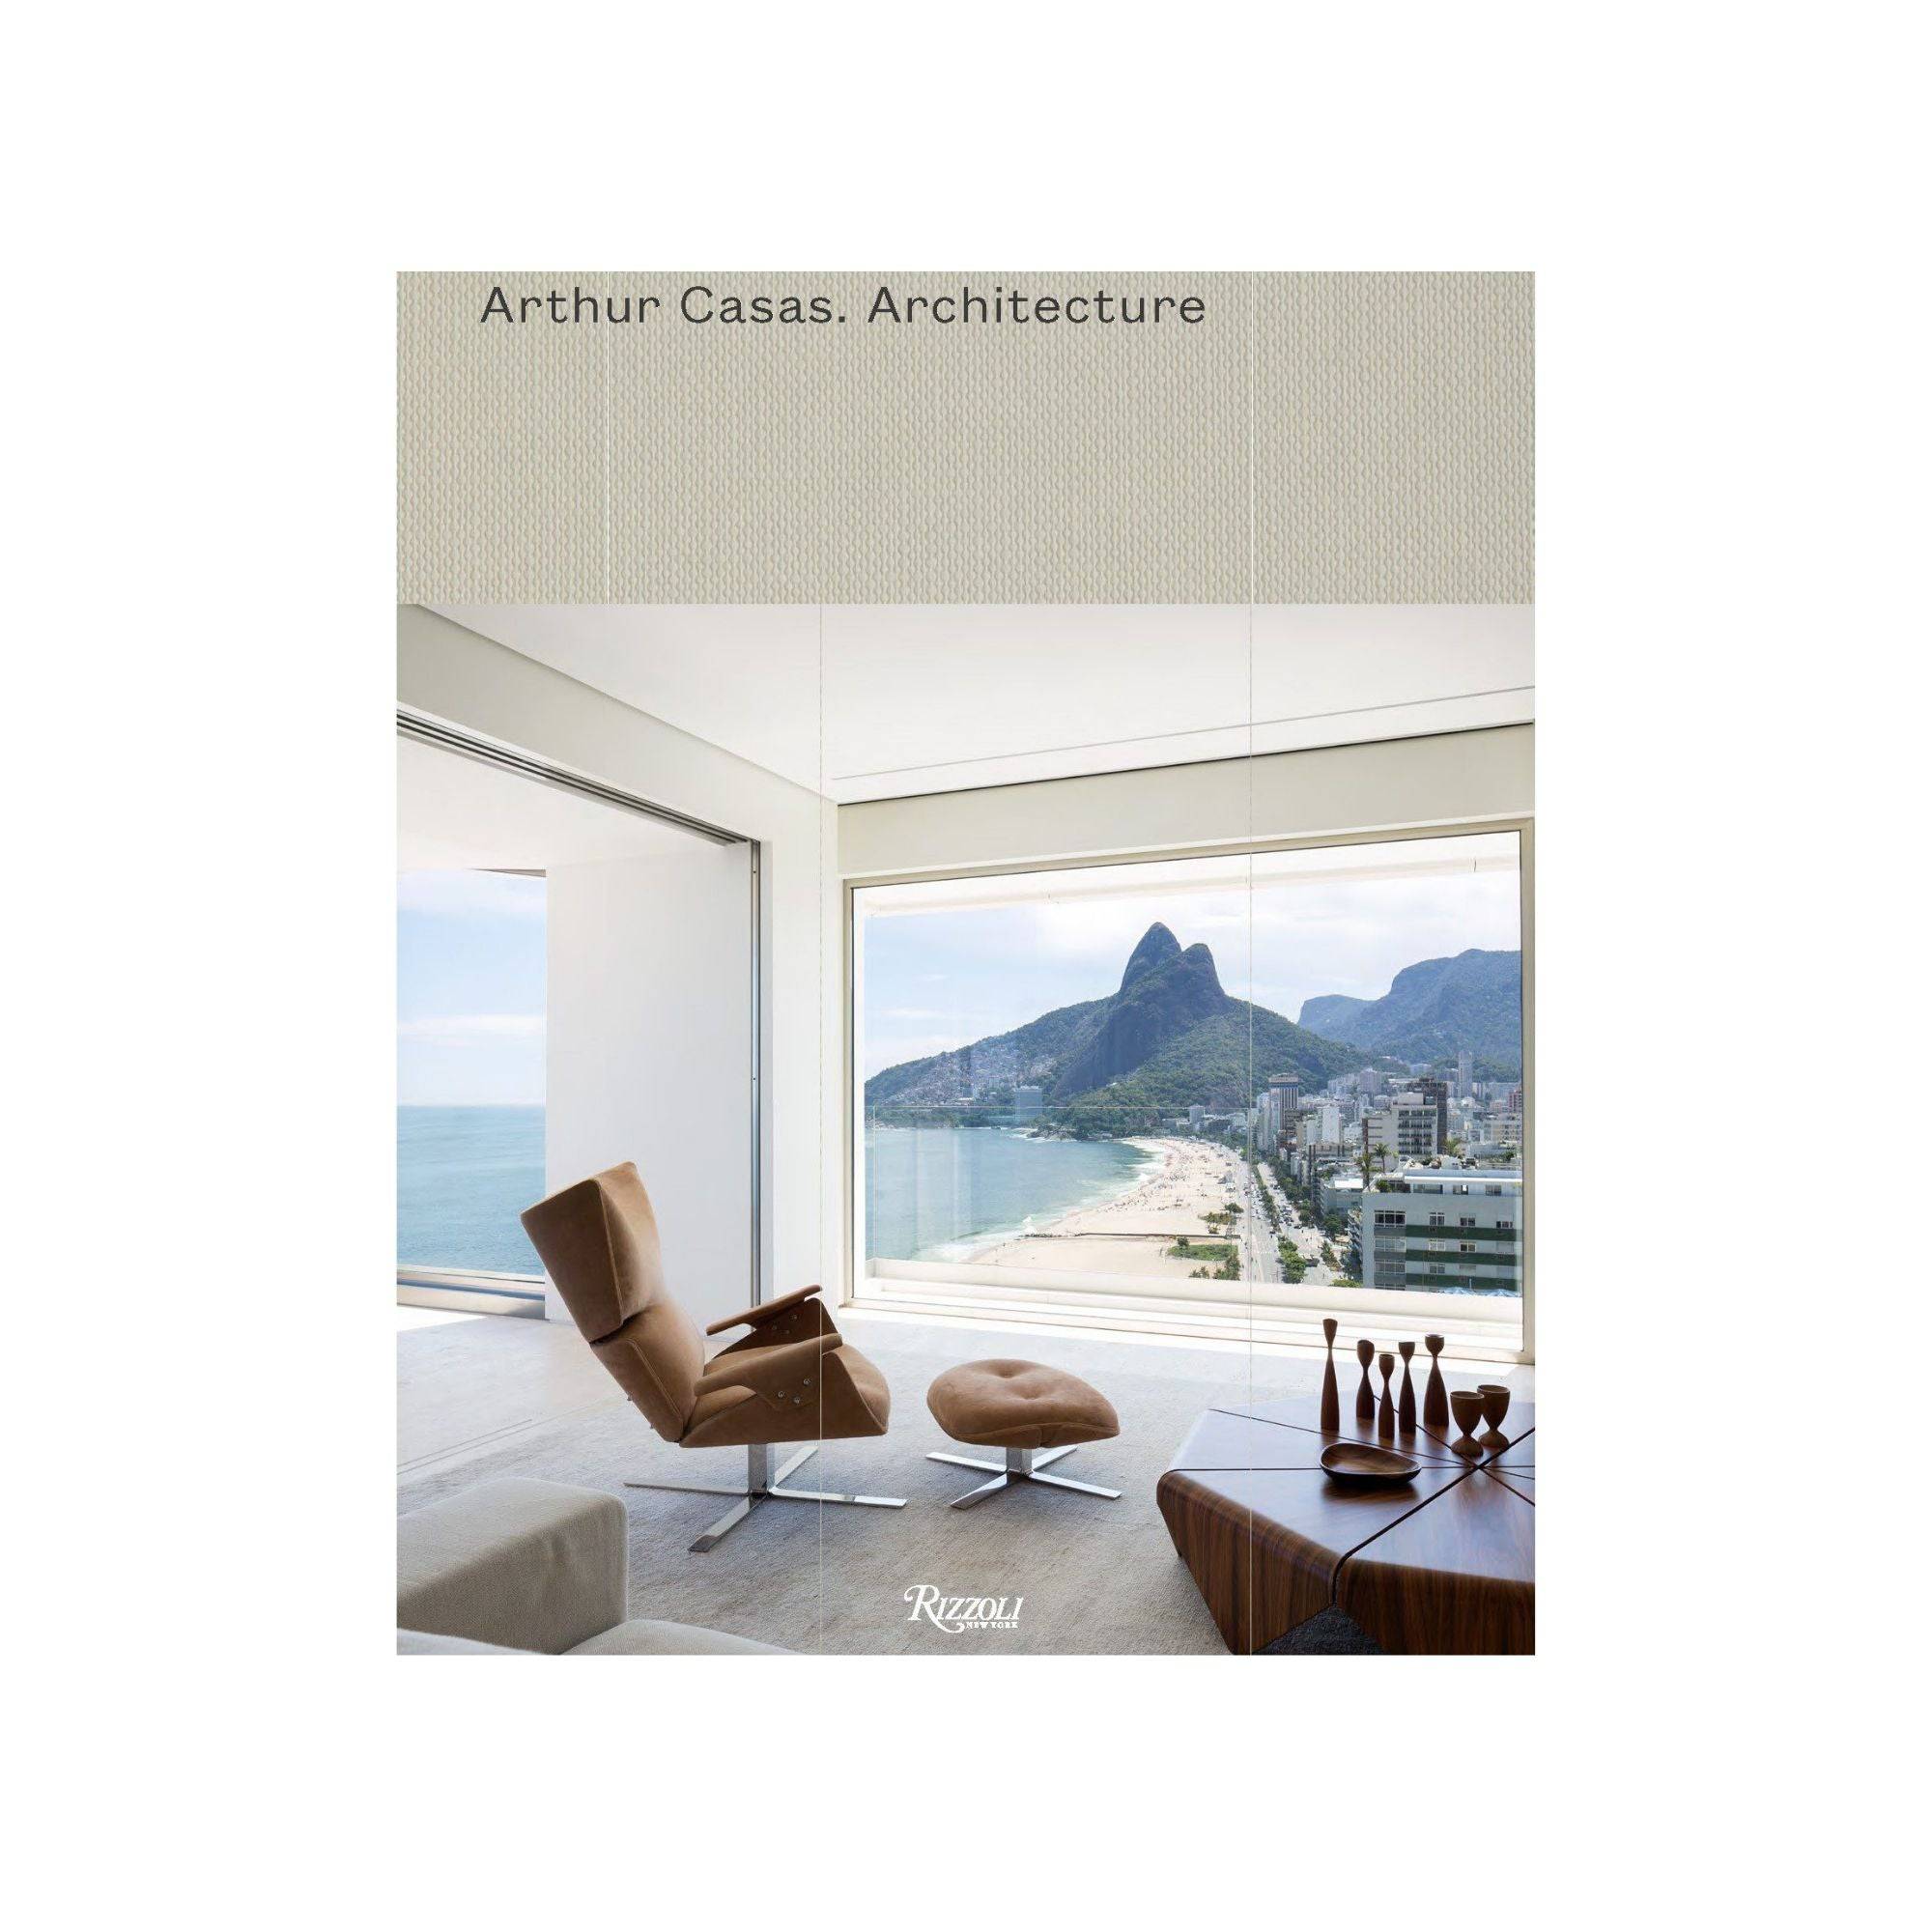 Arthur Casas: Architecture - THAT COOL LIVING